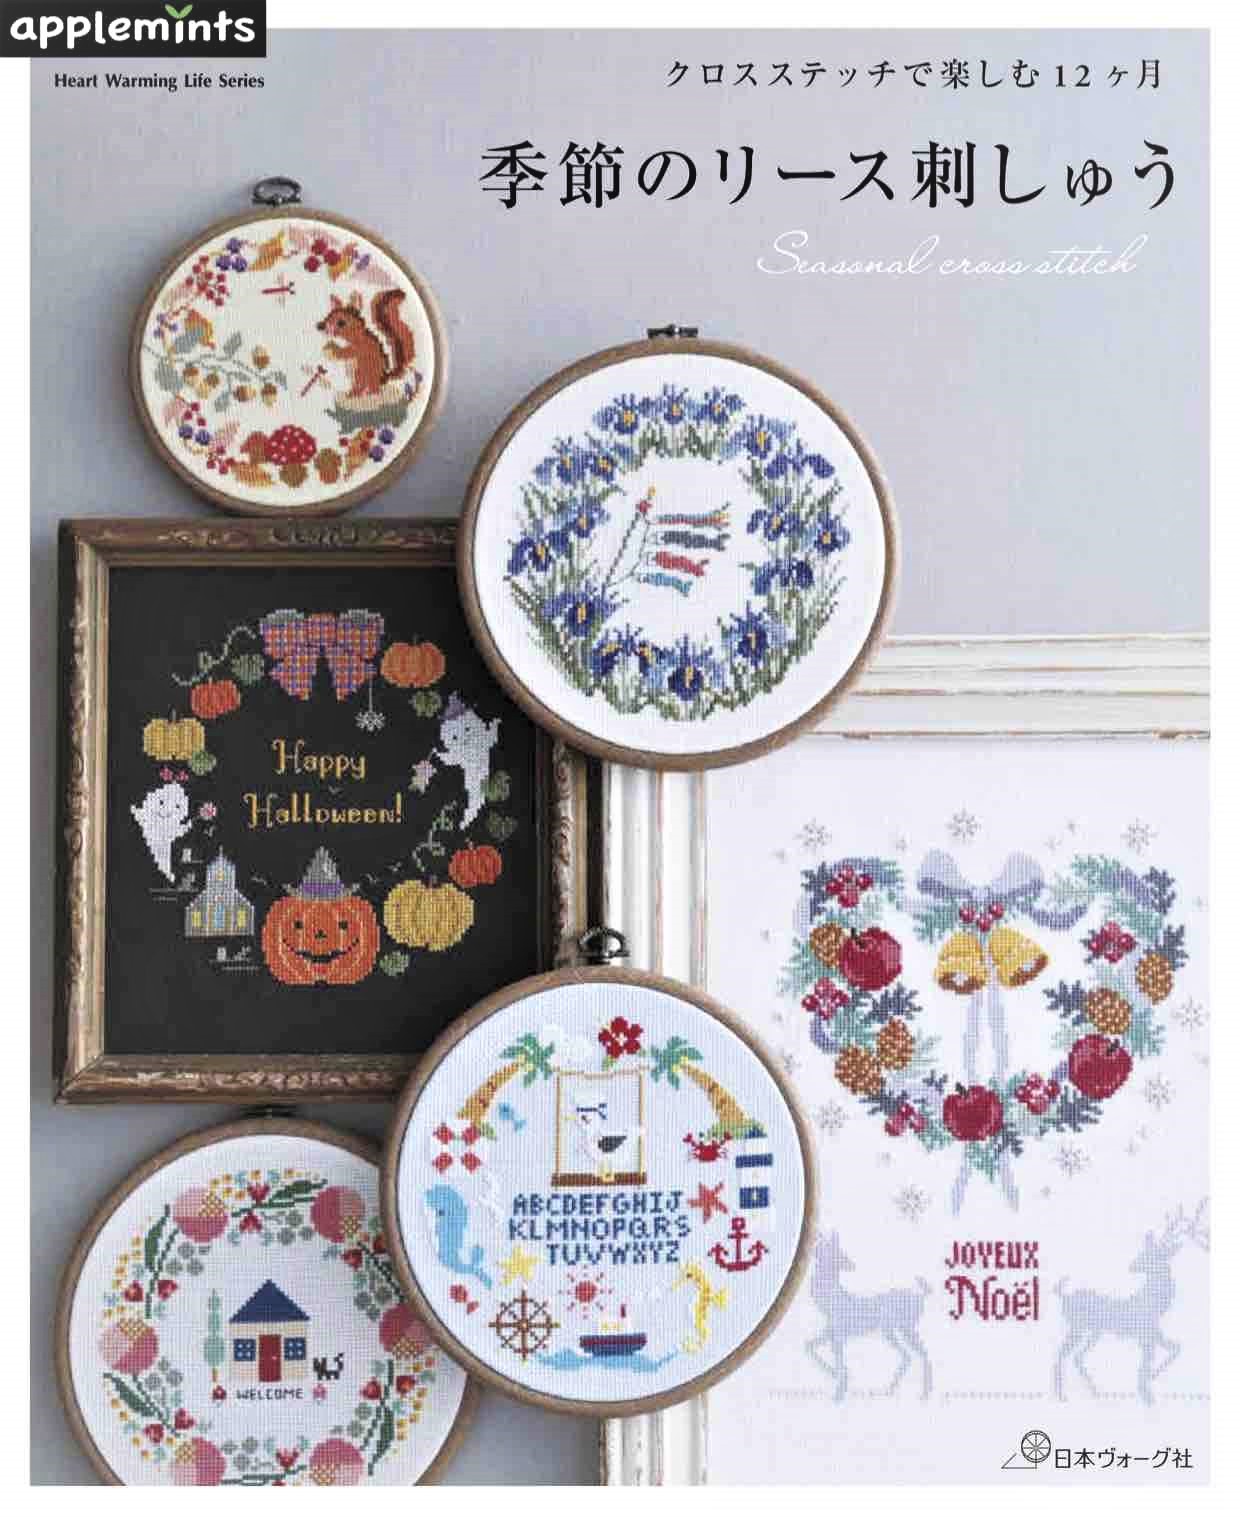 หนังสือญี่ปุ่น-คอลเลกชันงานปักครอสติชชุดดอกไม้ตามฤดูกาล